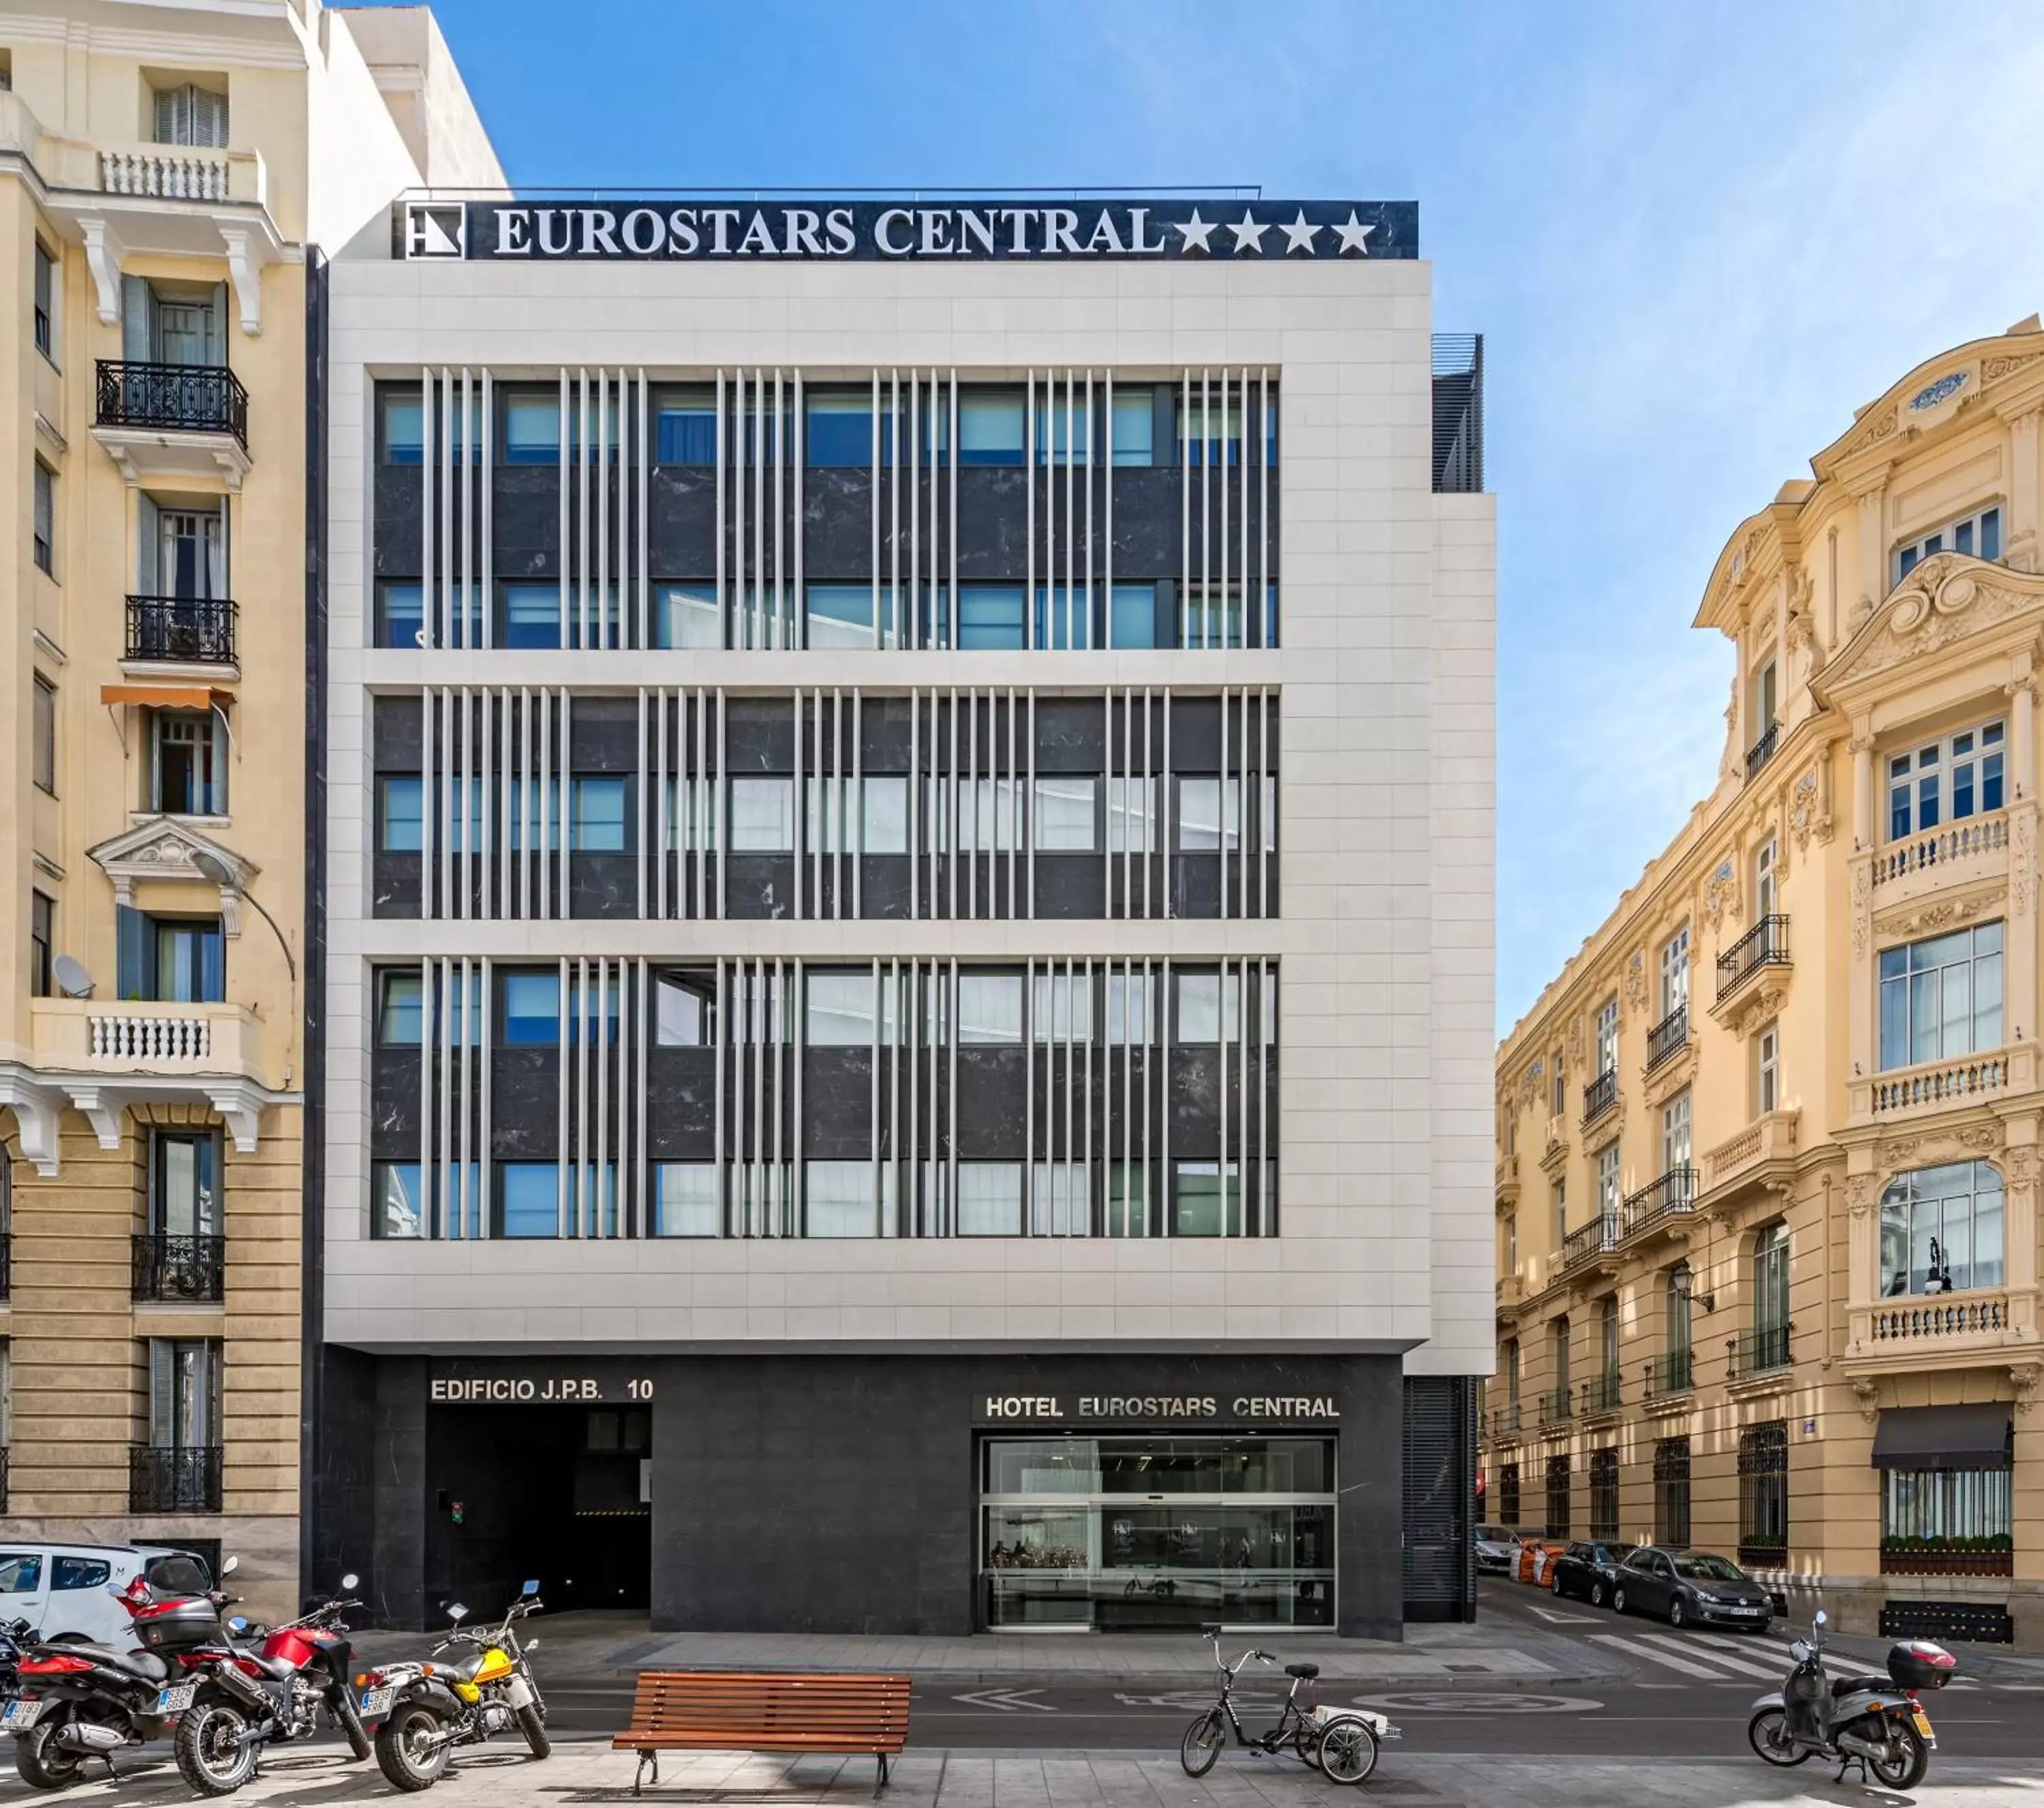 Facade/entrance, Property Building in Eurostars Central